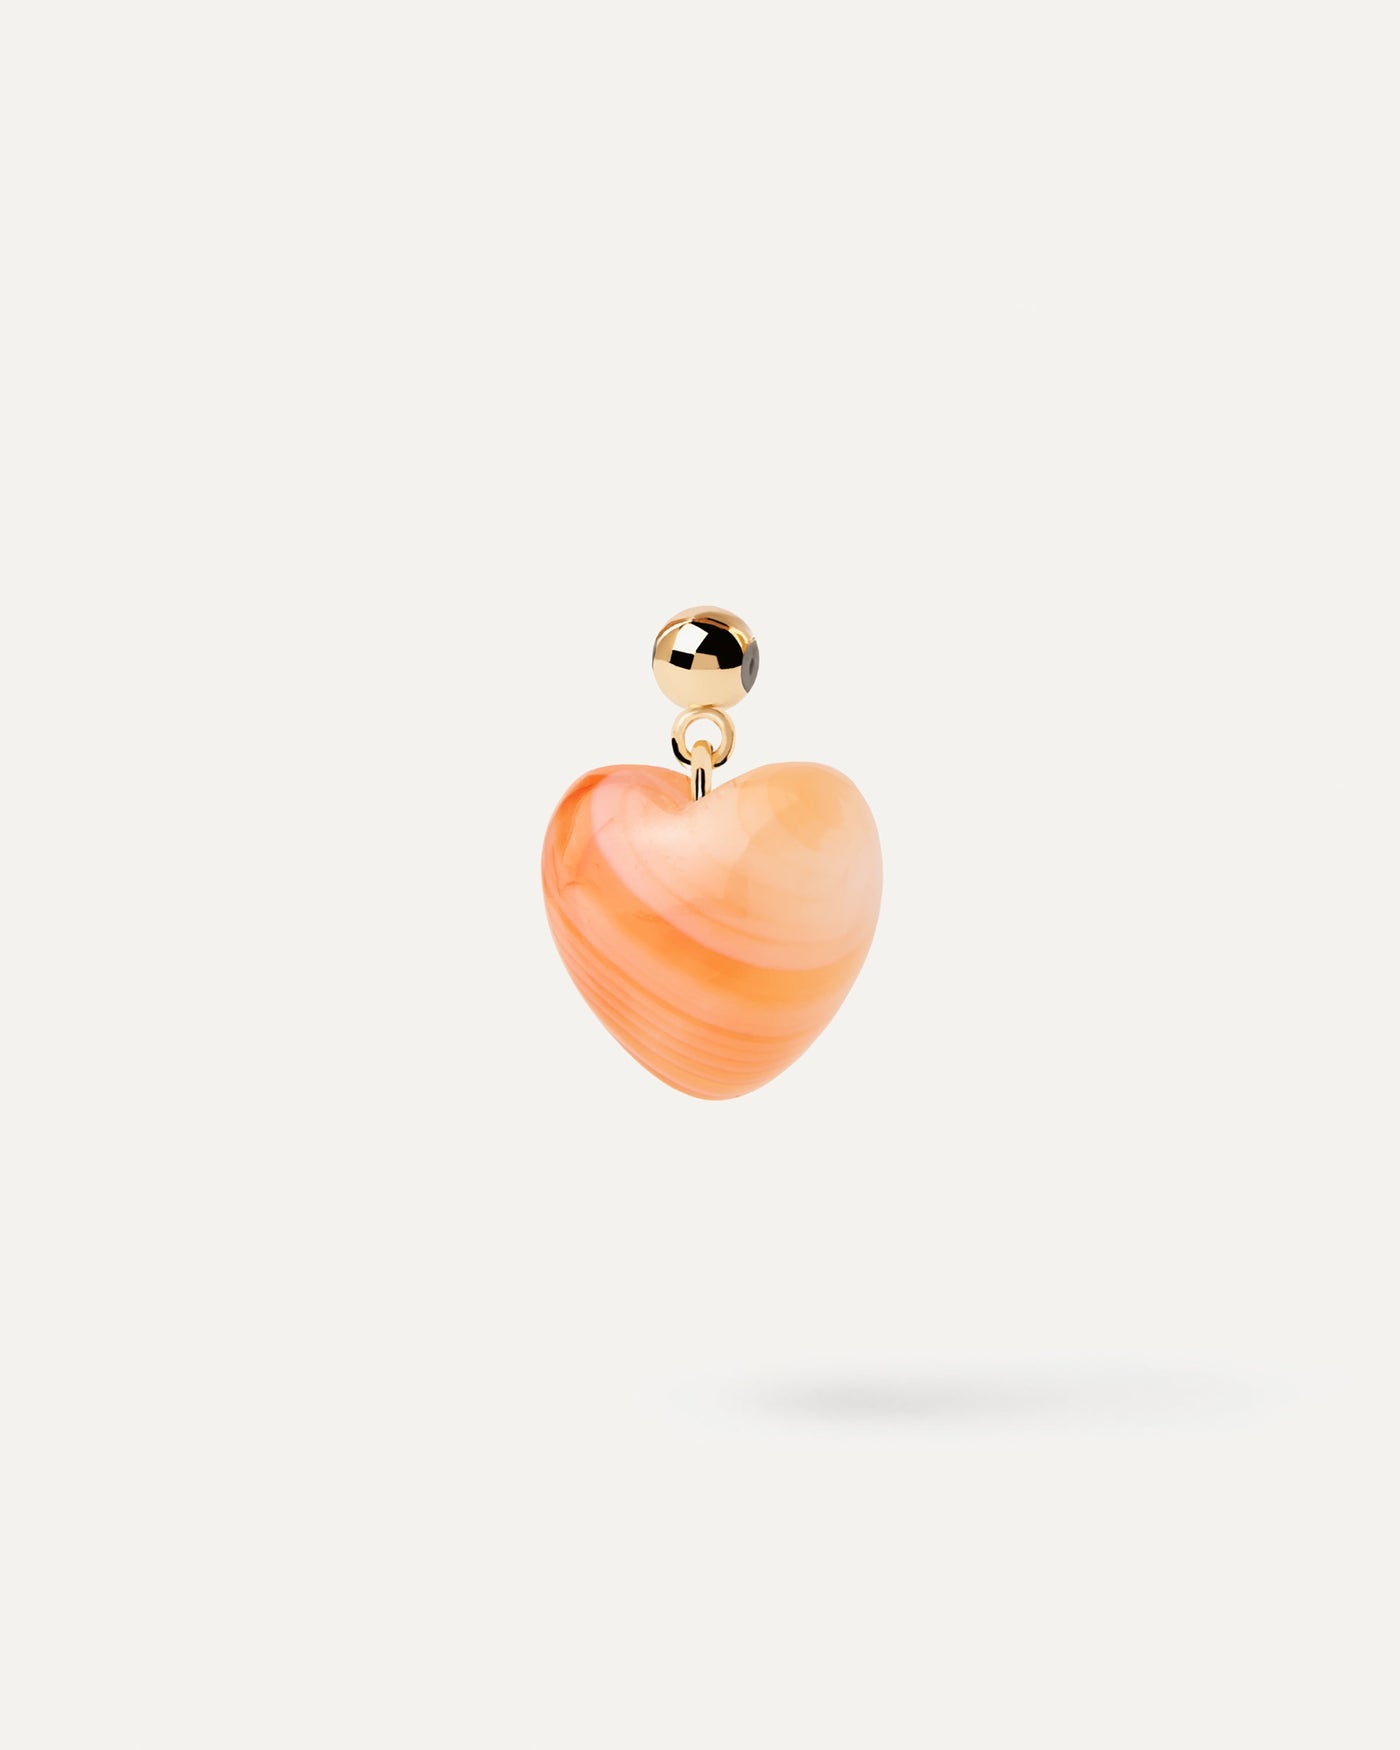 Charm Cœur Agate Orange. Charm cœur de pierre orange pour collier ou bracelet. Découvrez les dernières nouveautés de chez PDPAOLA. Commandez et recevez votre bijou en toute sérénité.